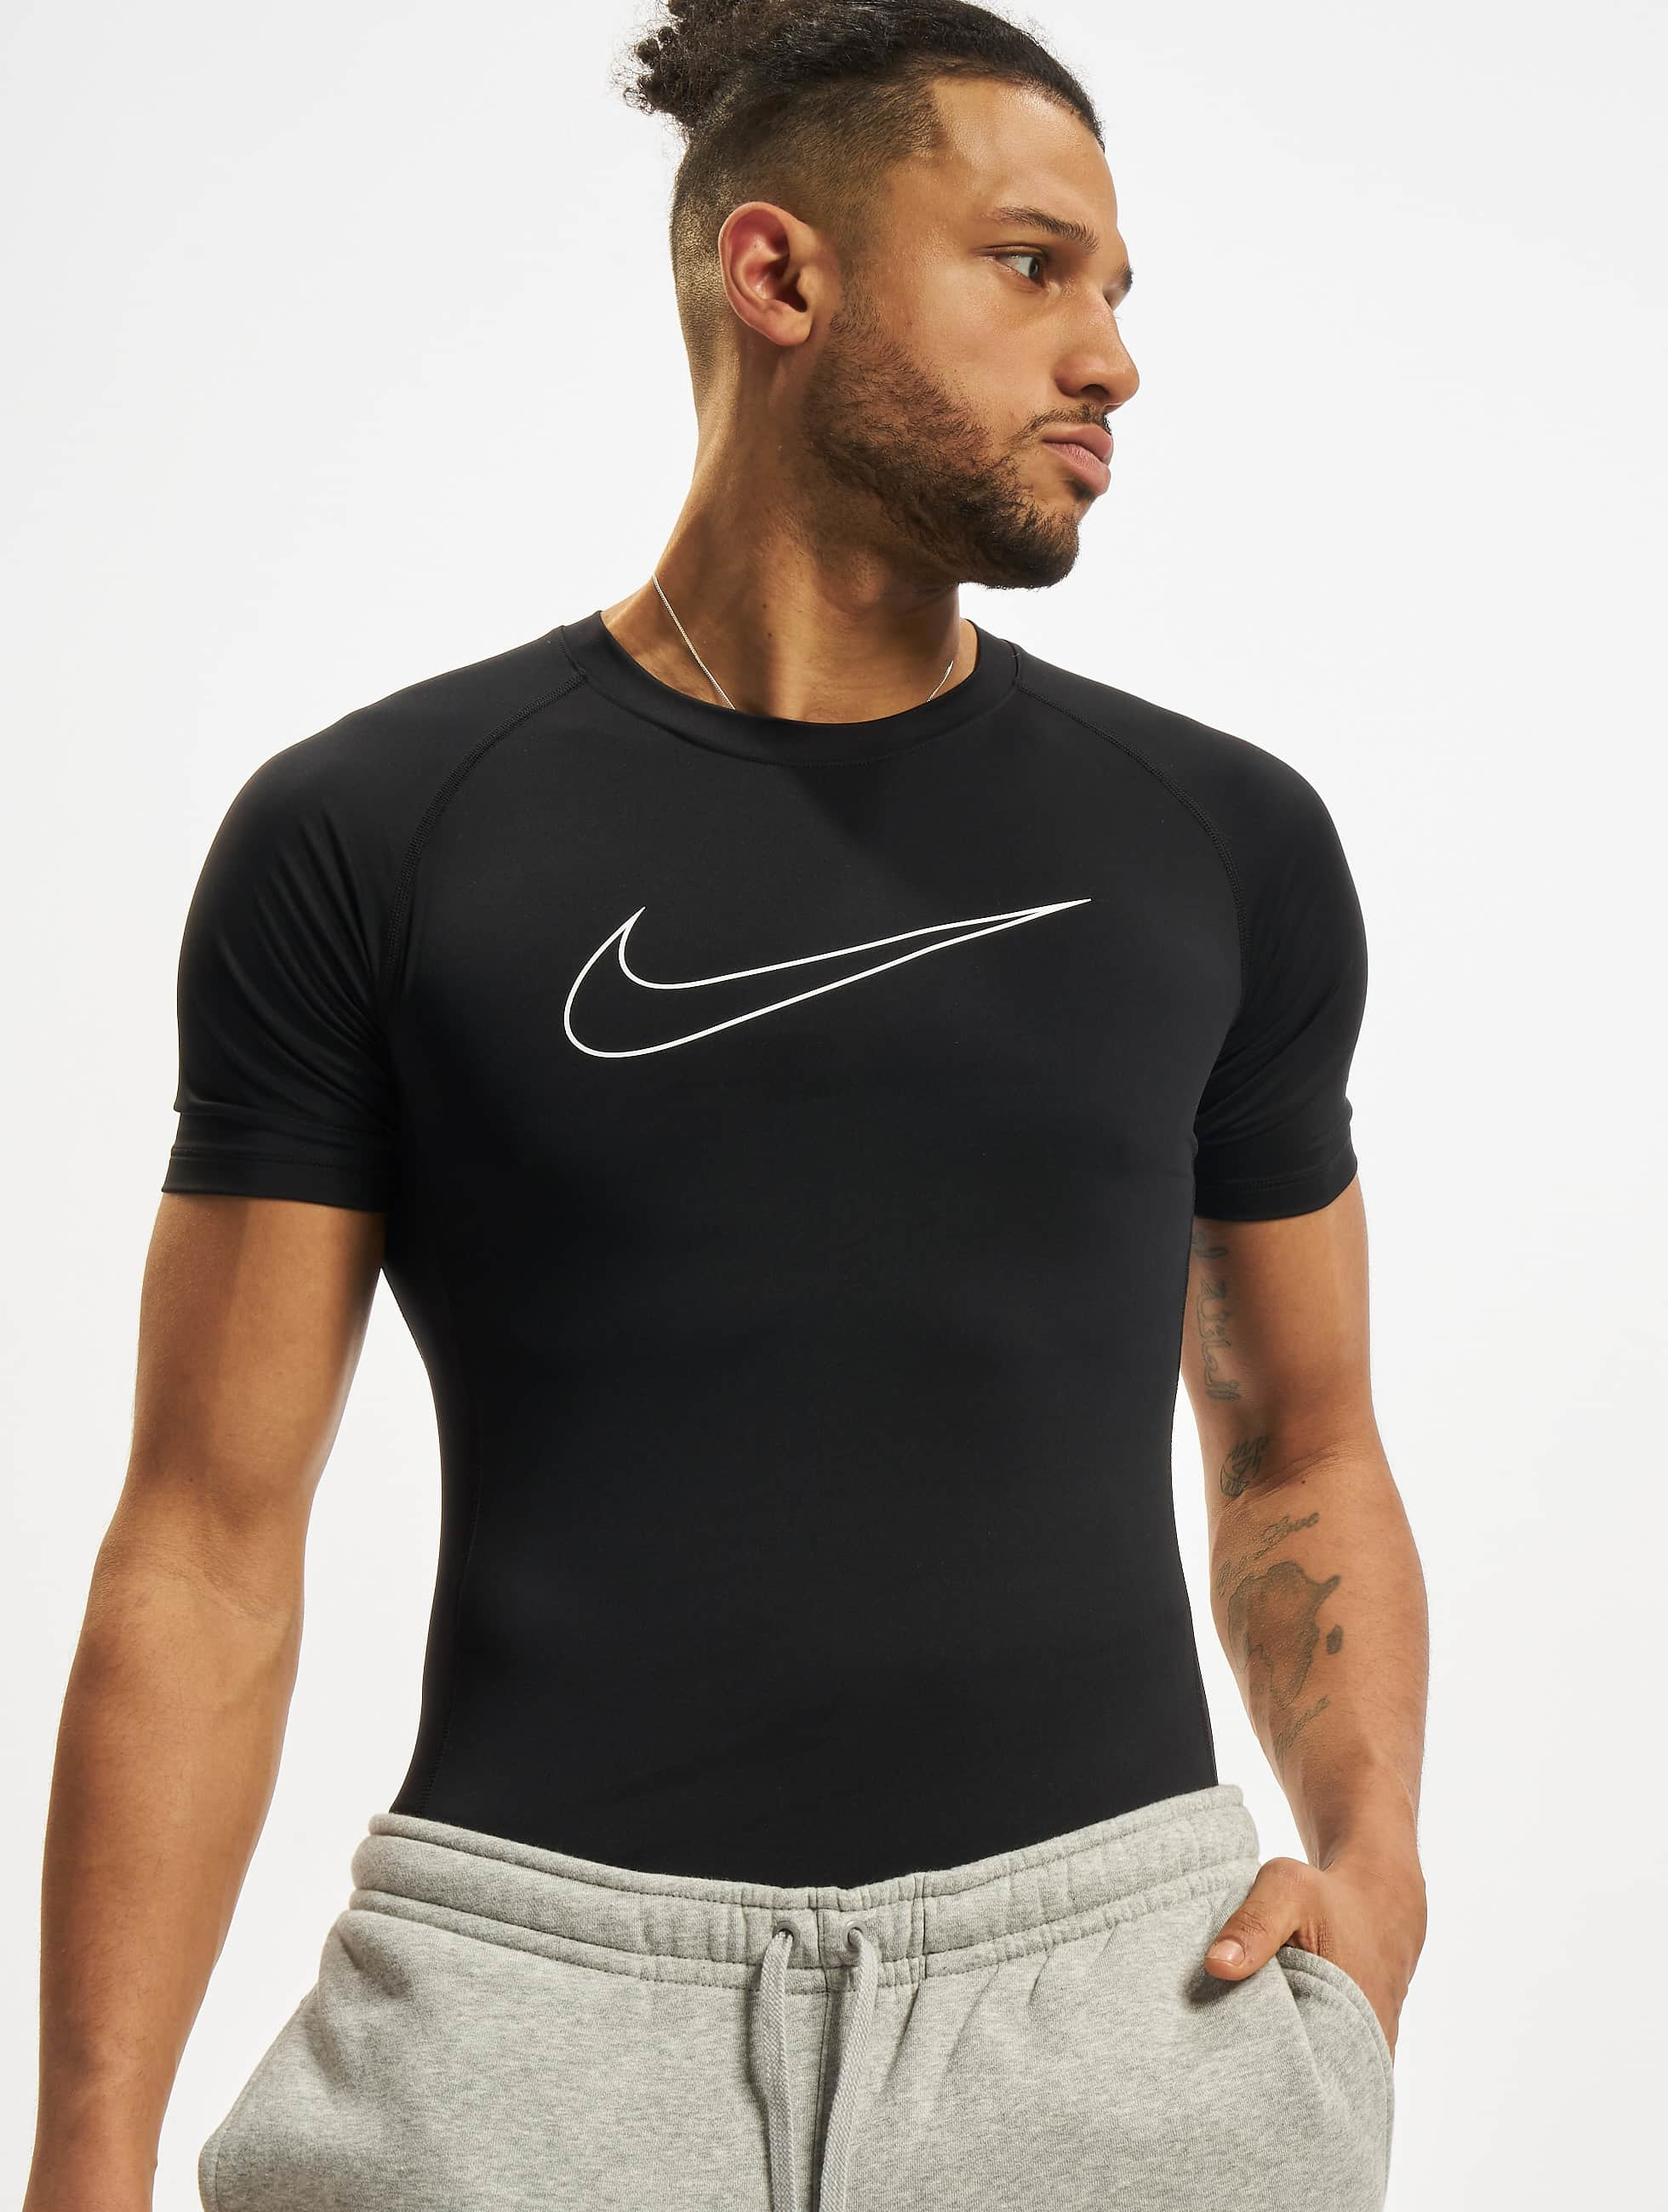 Belonend stereo Pakistan Nike Performance Overwear / T-Shirt Dri-Fit Tight Top in black 876727